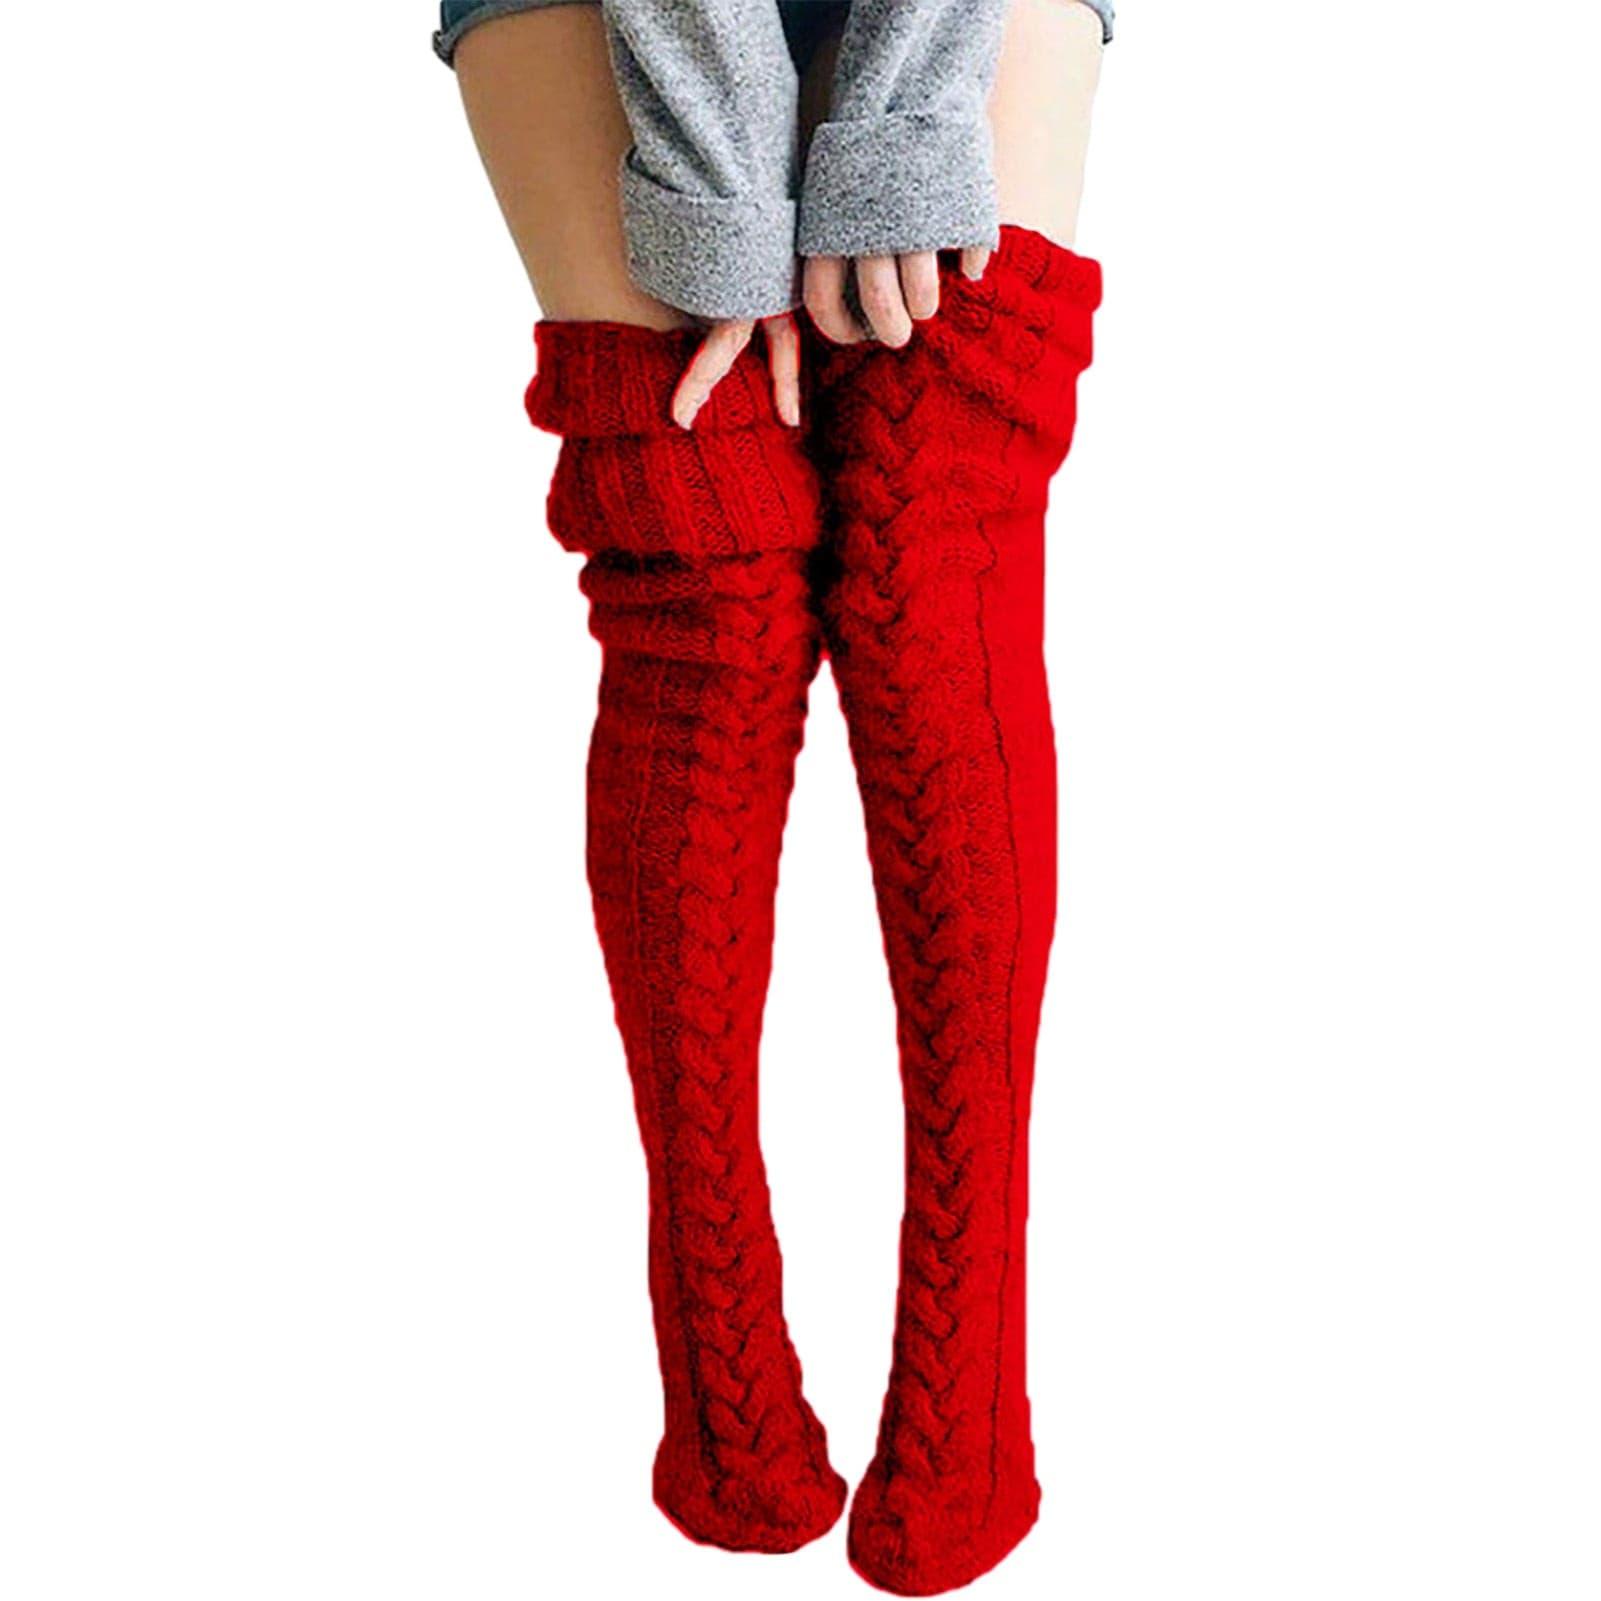 Chaussettes extra longues tricotées - DealValley